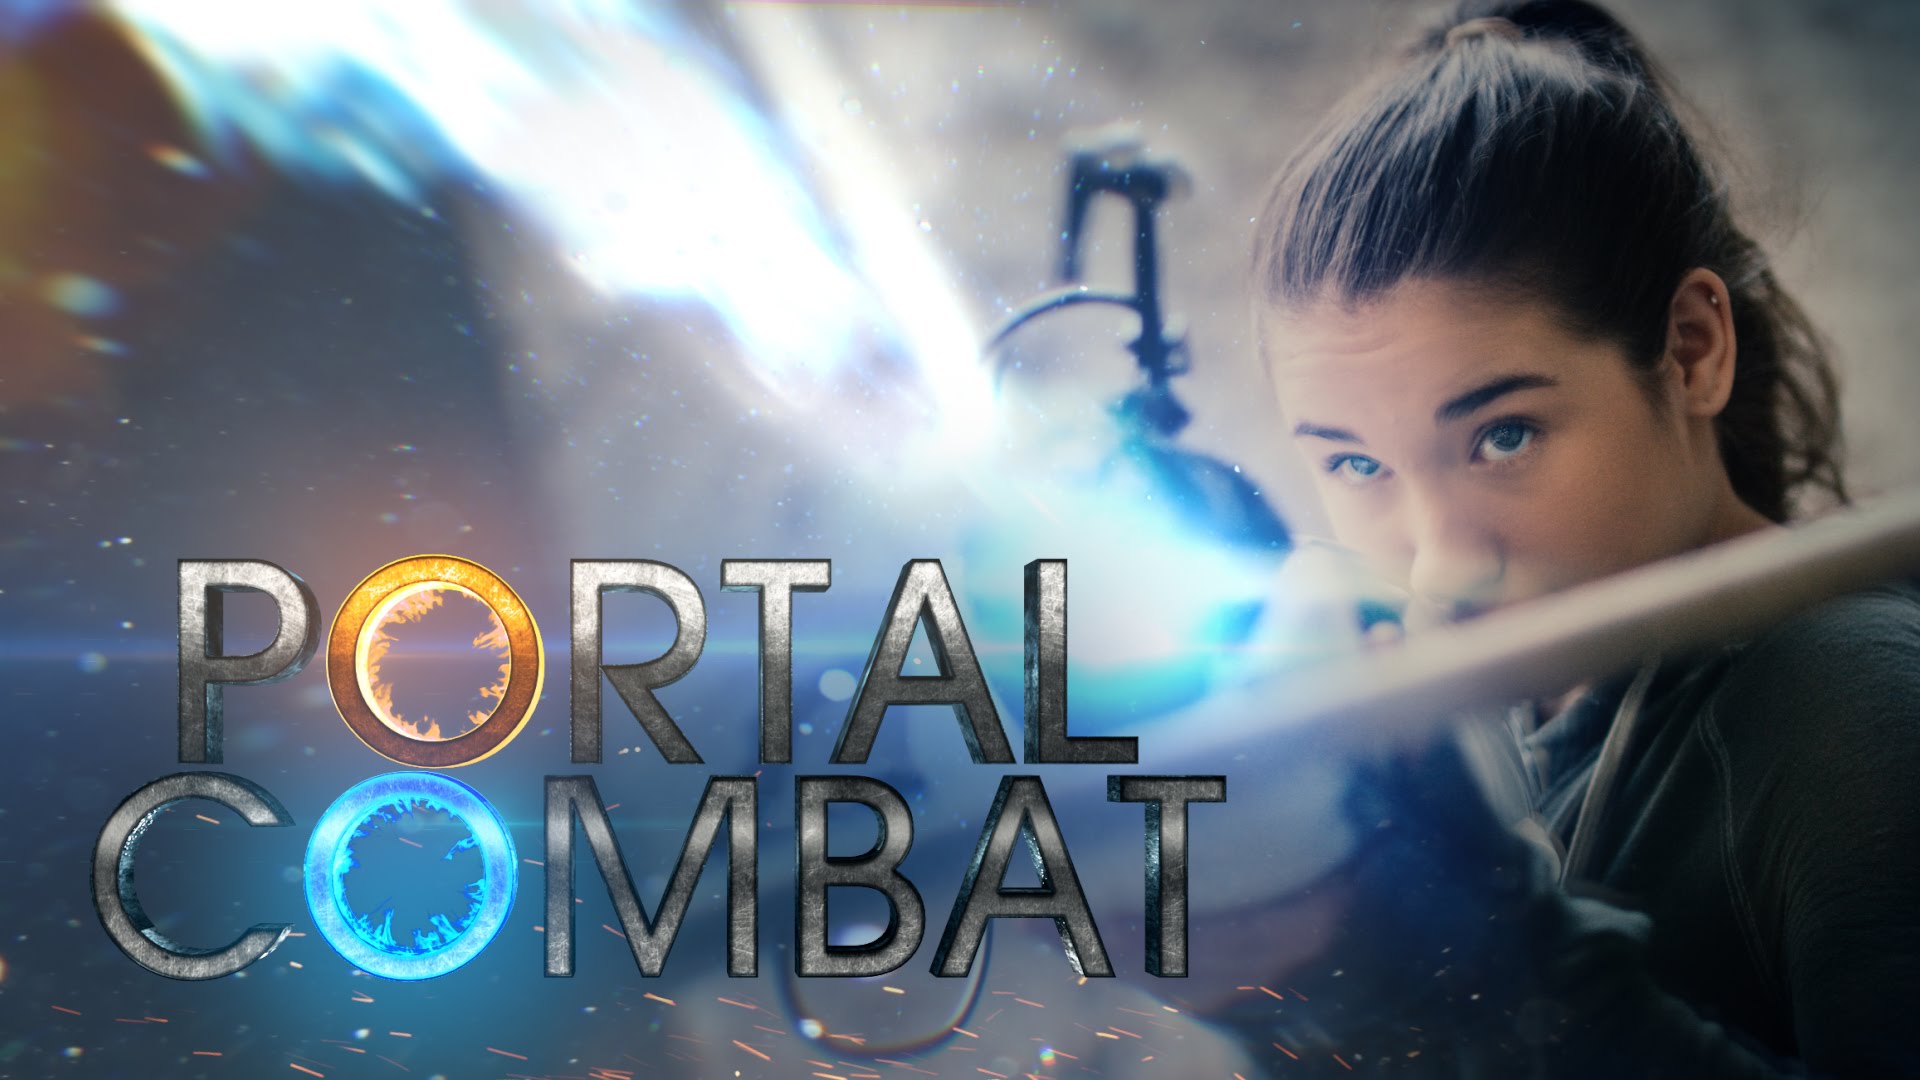 Portal Combat – Como você sairia dessa?